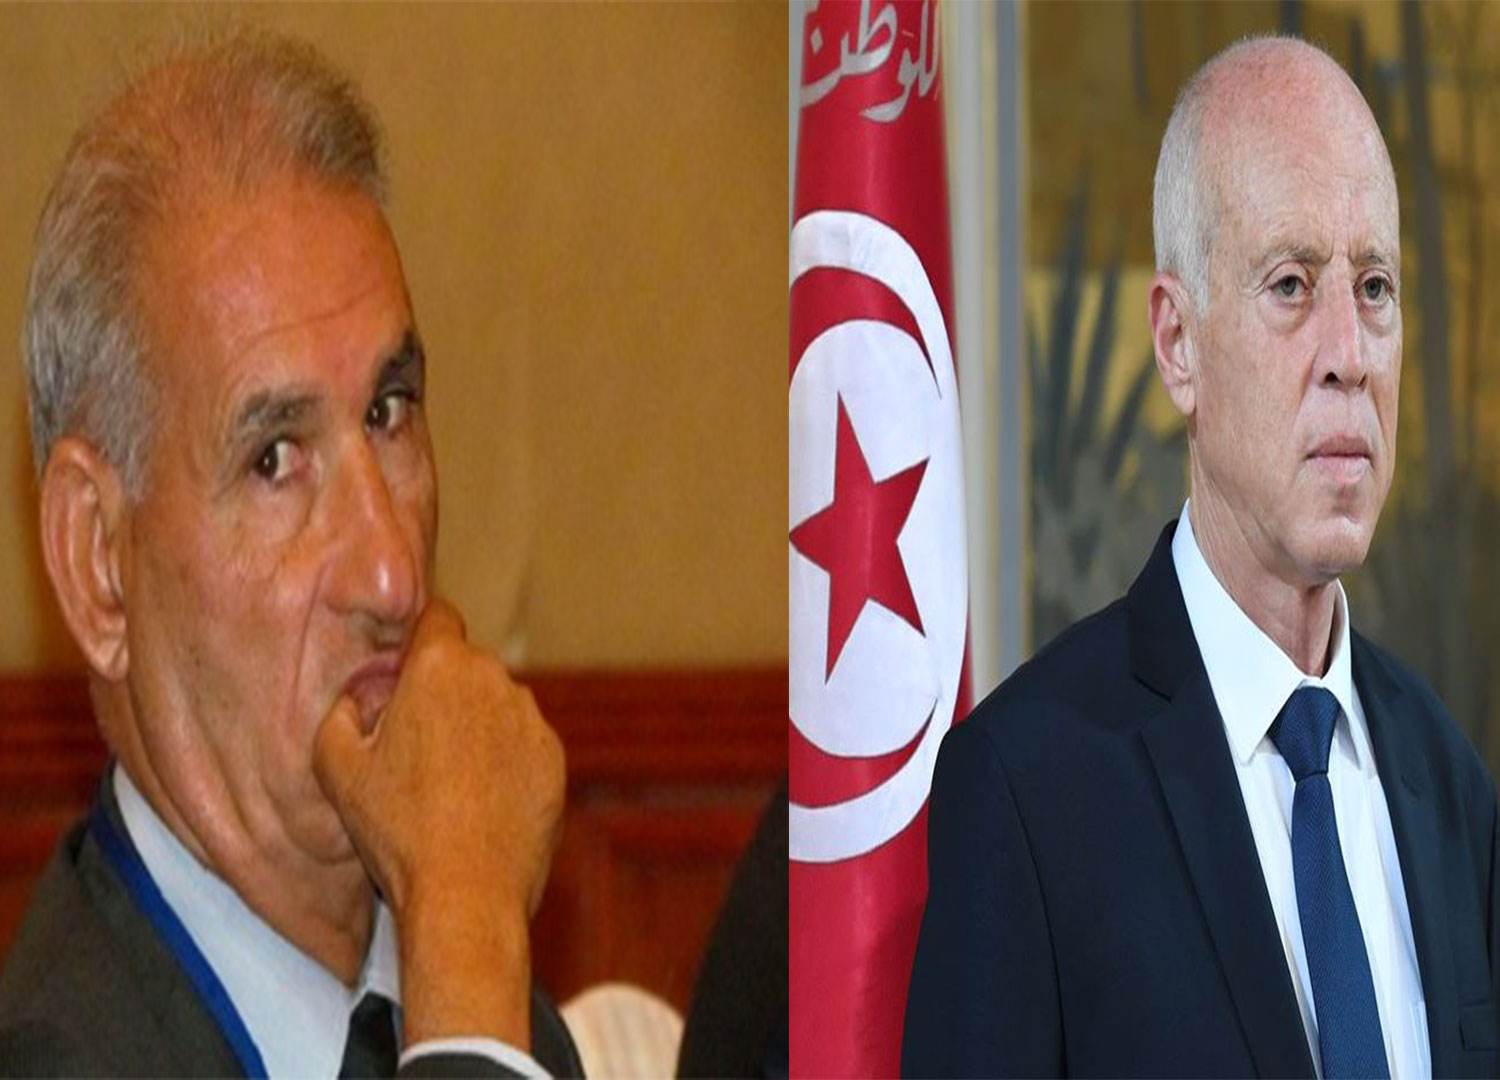 Dimasi à Tunisie Numérique : La restitution de l’argent spolié est une illusion